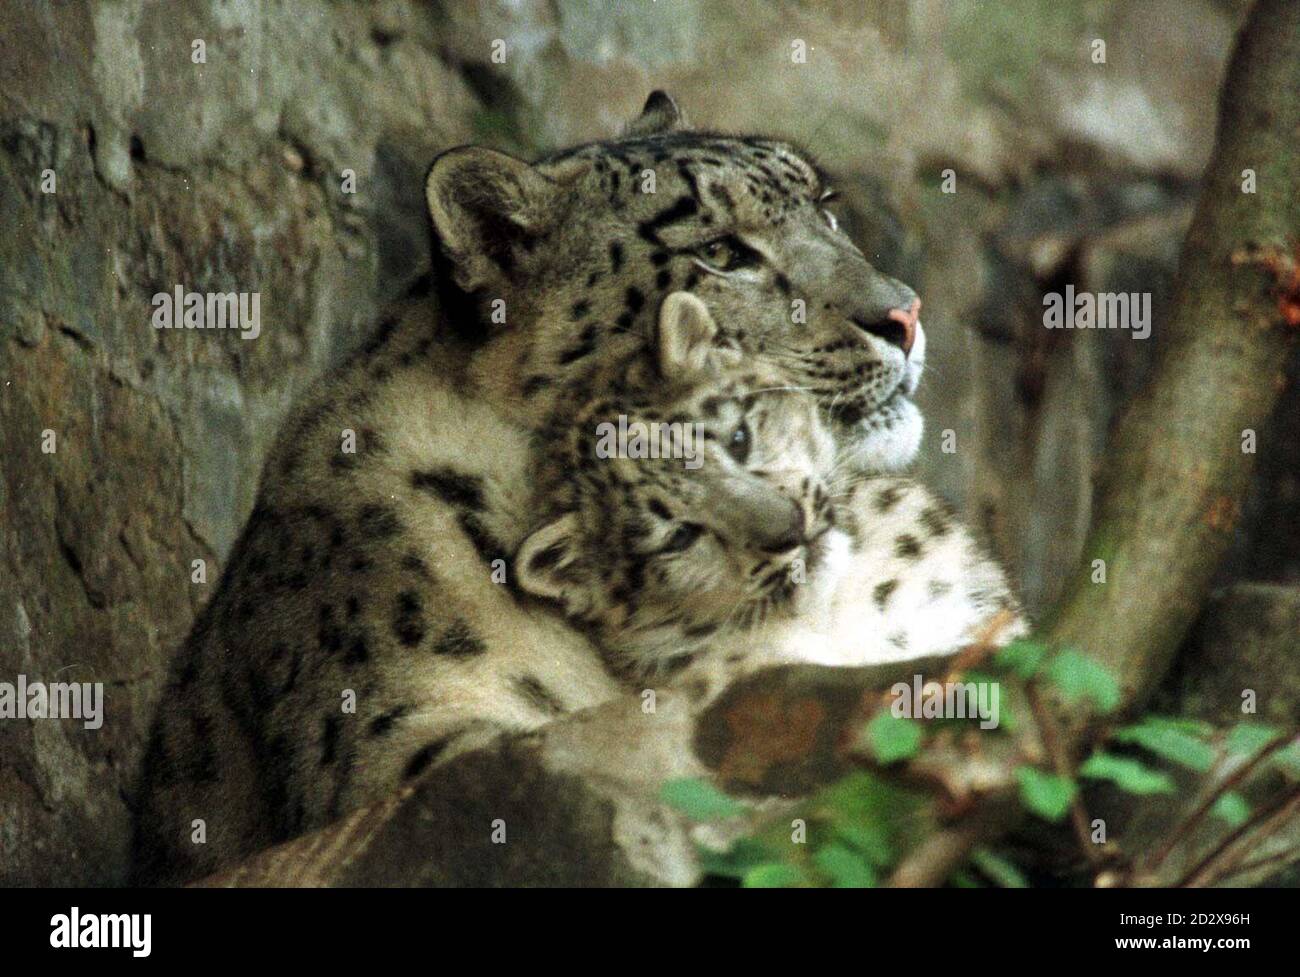 'ayan' un cucciolo di leopardo di neve, nato il 25 maggio di quest'anno allo Zoo di Edimburgo, con sua madre Misha. I leopardi della neve sono nativi dell'Asia centrale, una volta trovati ampiamente in Cina e in Mongolia, ma il loro numero è ora molto basso in natura, a causa di una caccia eccessiva per il commercio di pellicce. Foto di Chris Bacon/PA Foto Stock